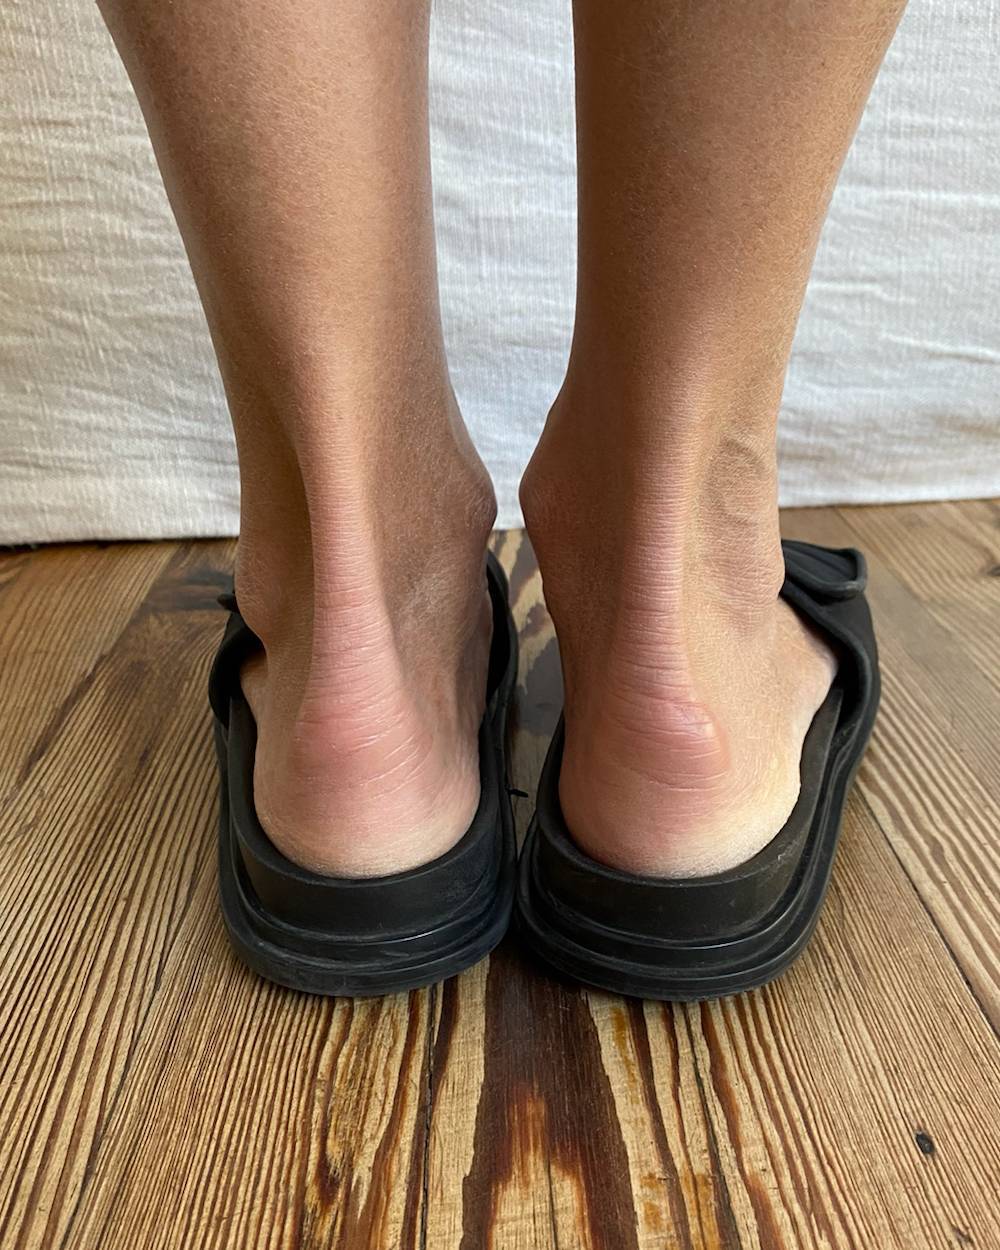 Andrea Frigerio Feet